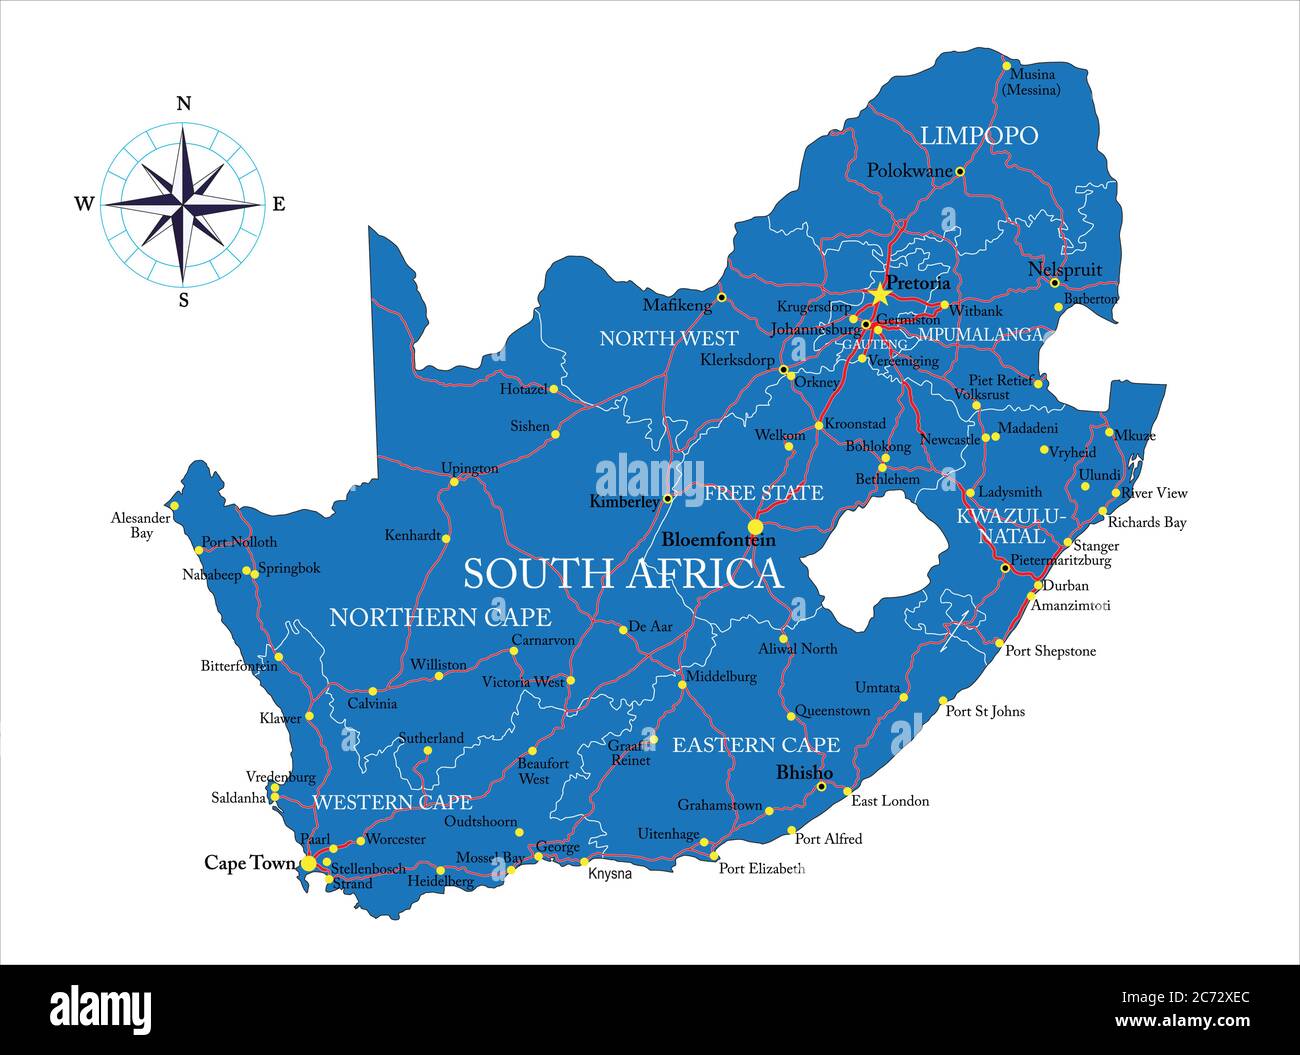 Mappa vettoriale del Sud Africa con regioni amministrative, città principali e strade. Illustrazione Vettoriale